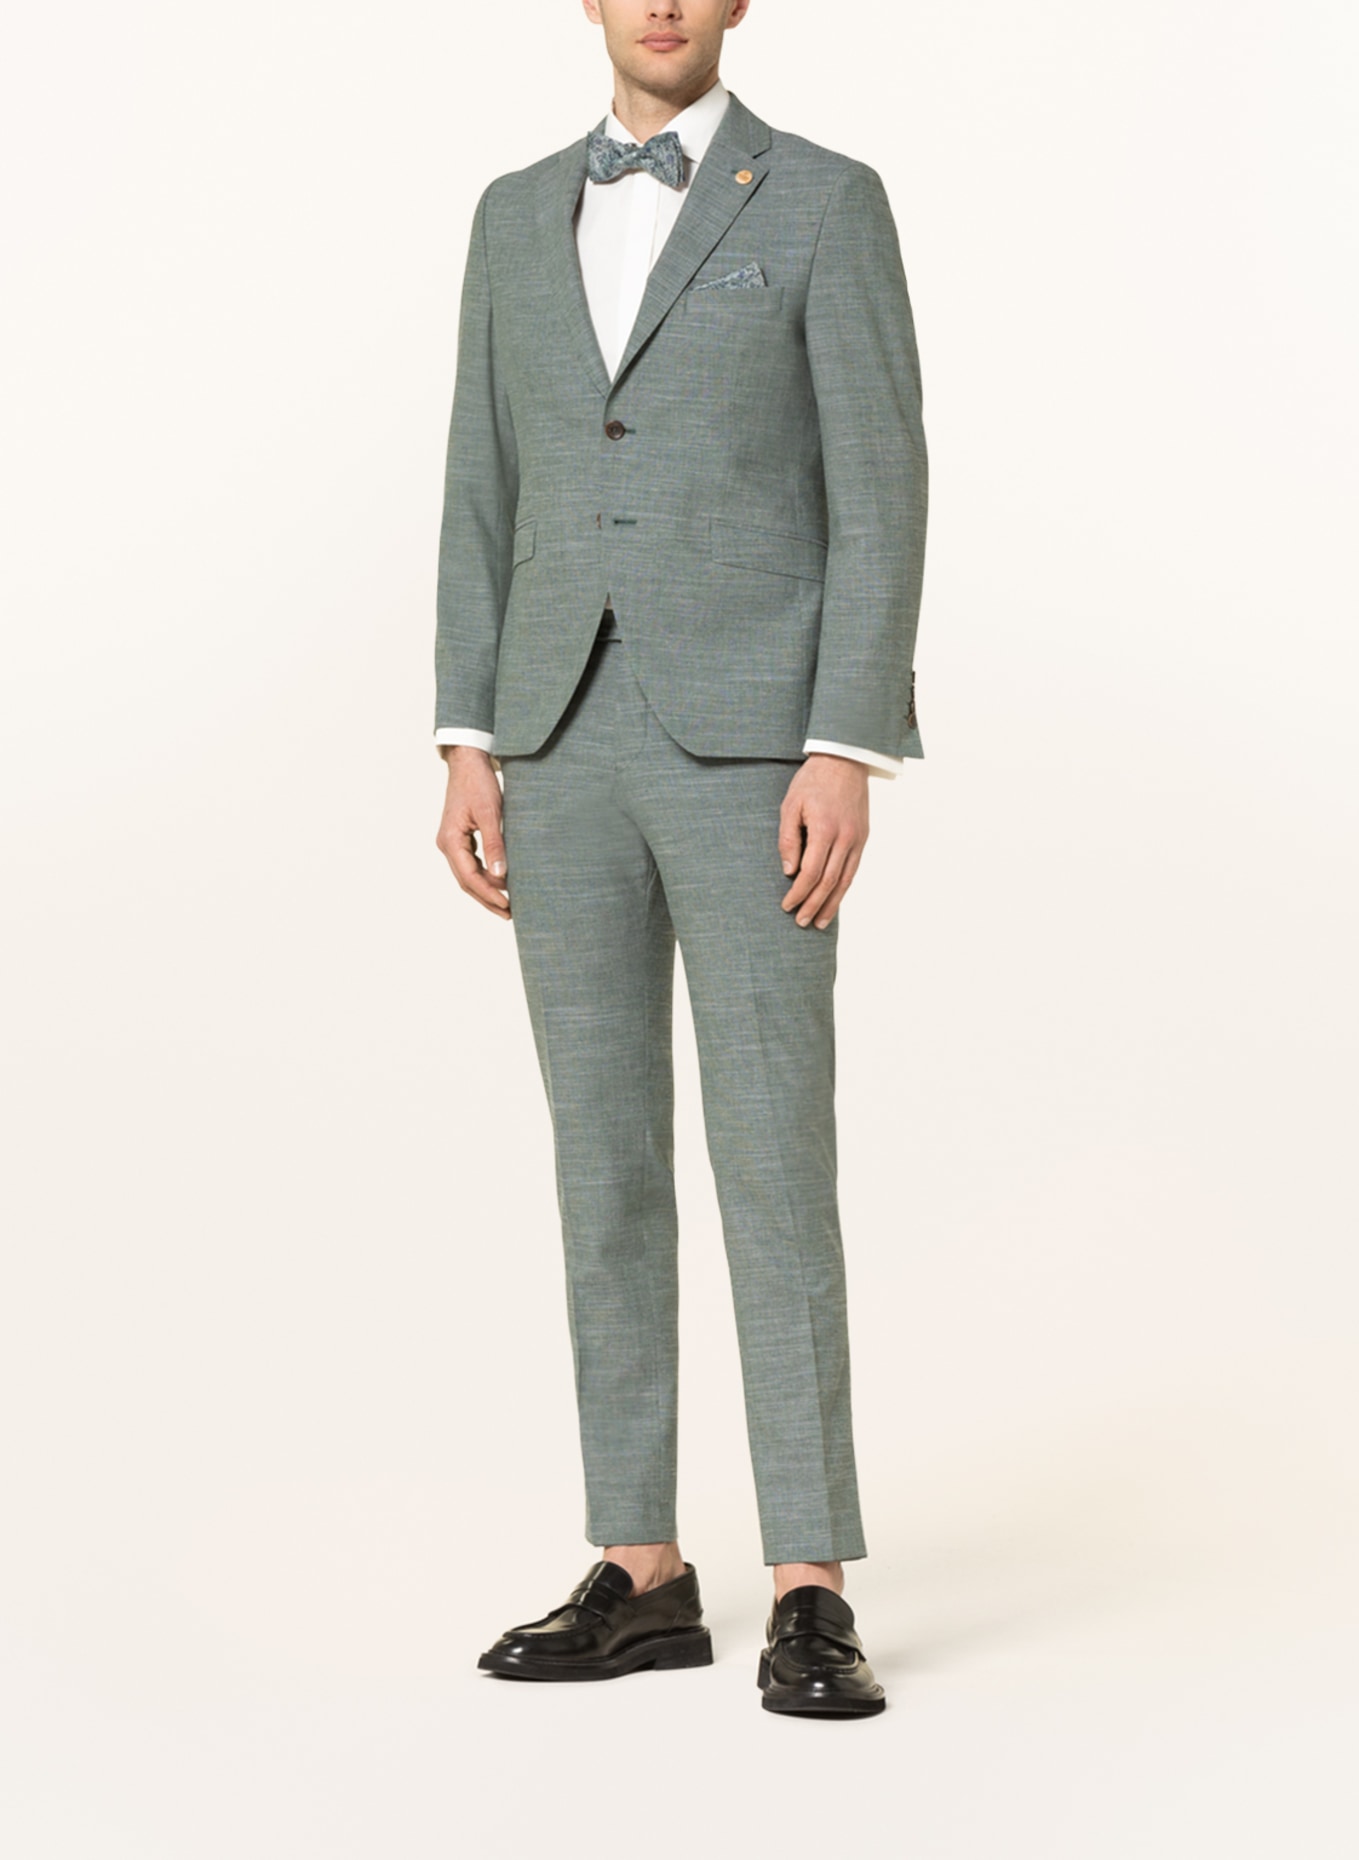 WILVORST Suit jacket extra slim fit, Color: 044 uni grün (Image 2)